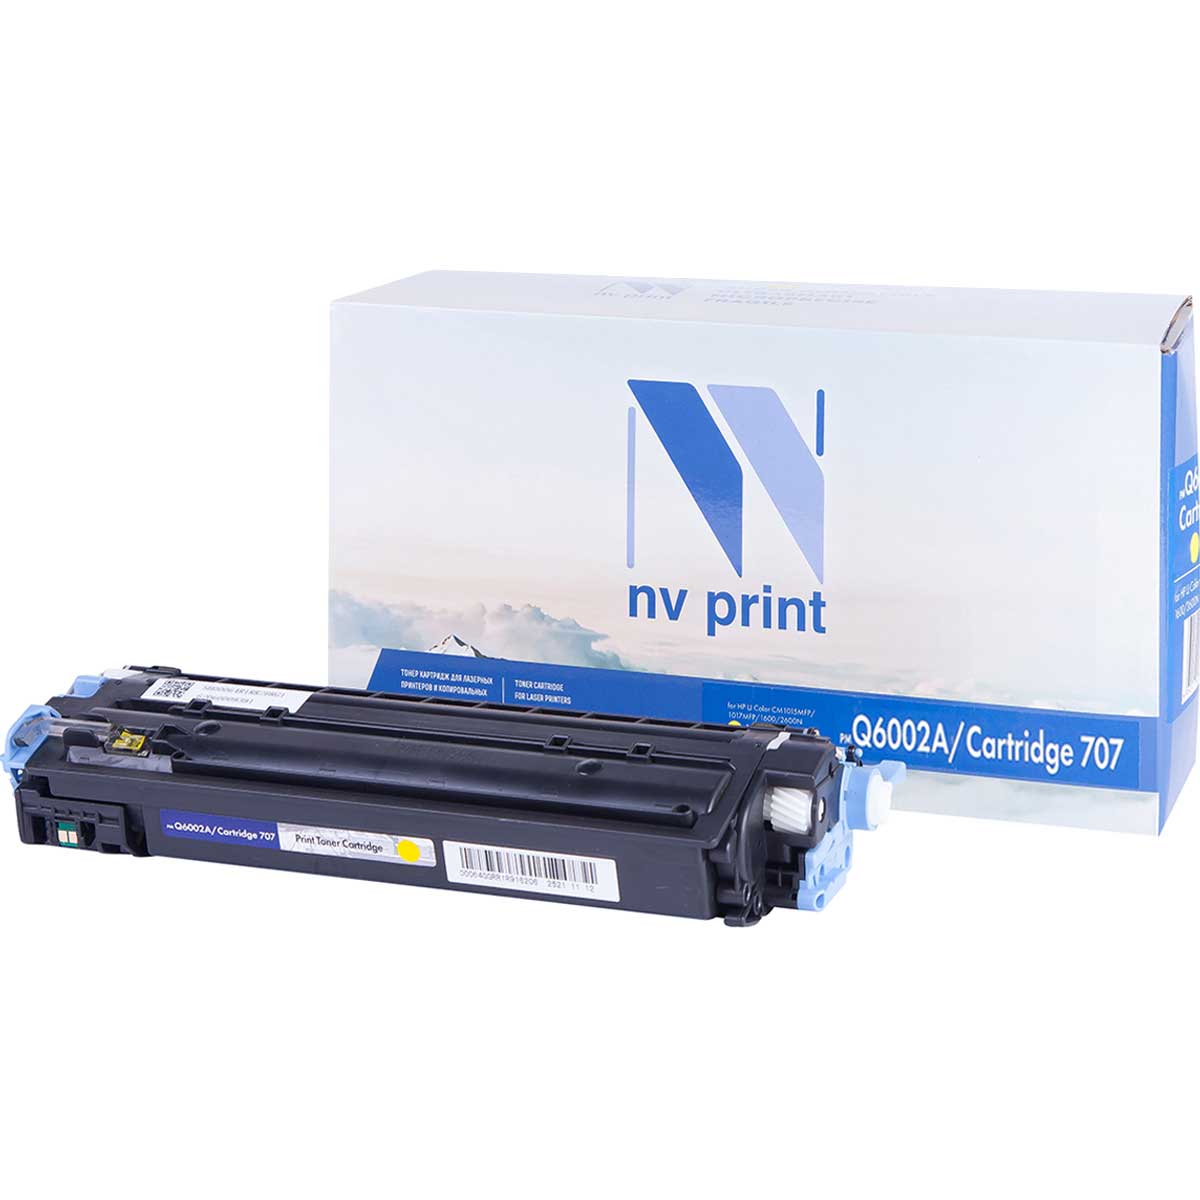 

Картридж для лазерного принтера NV Print Q6002A/707Y, Yellow, Желтый, NV-Q6002A/707Y